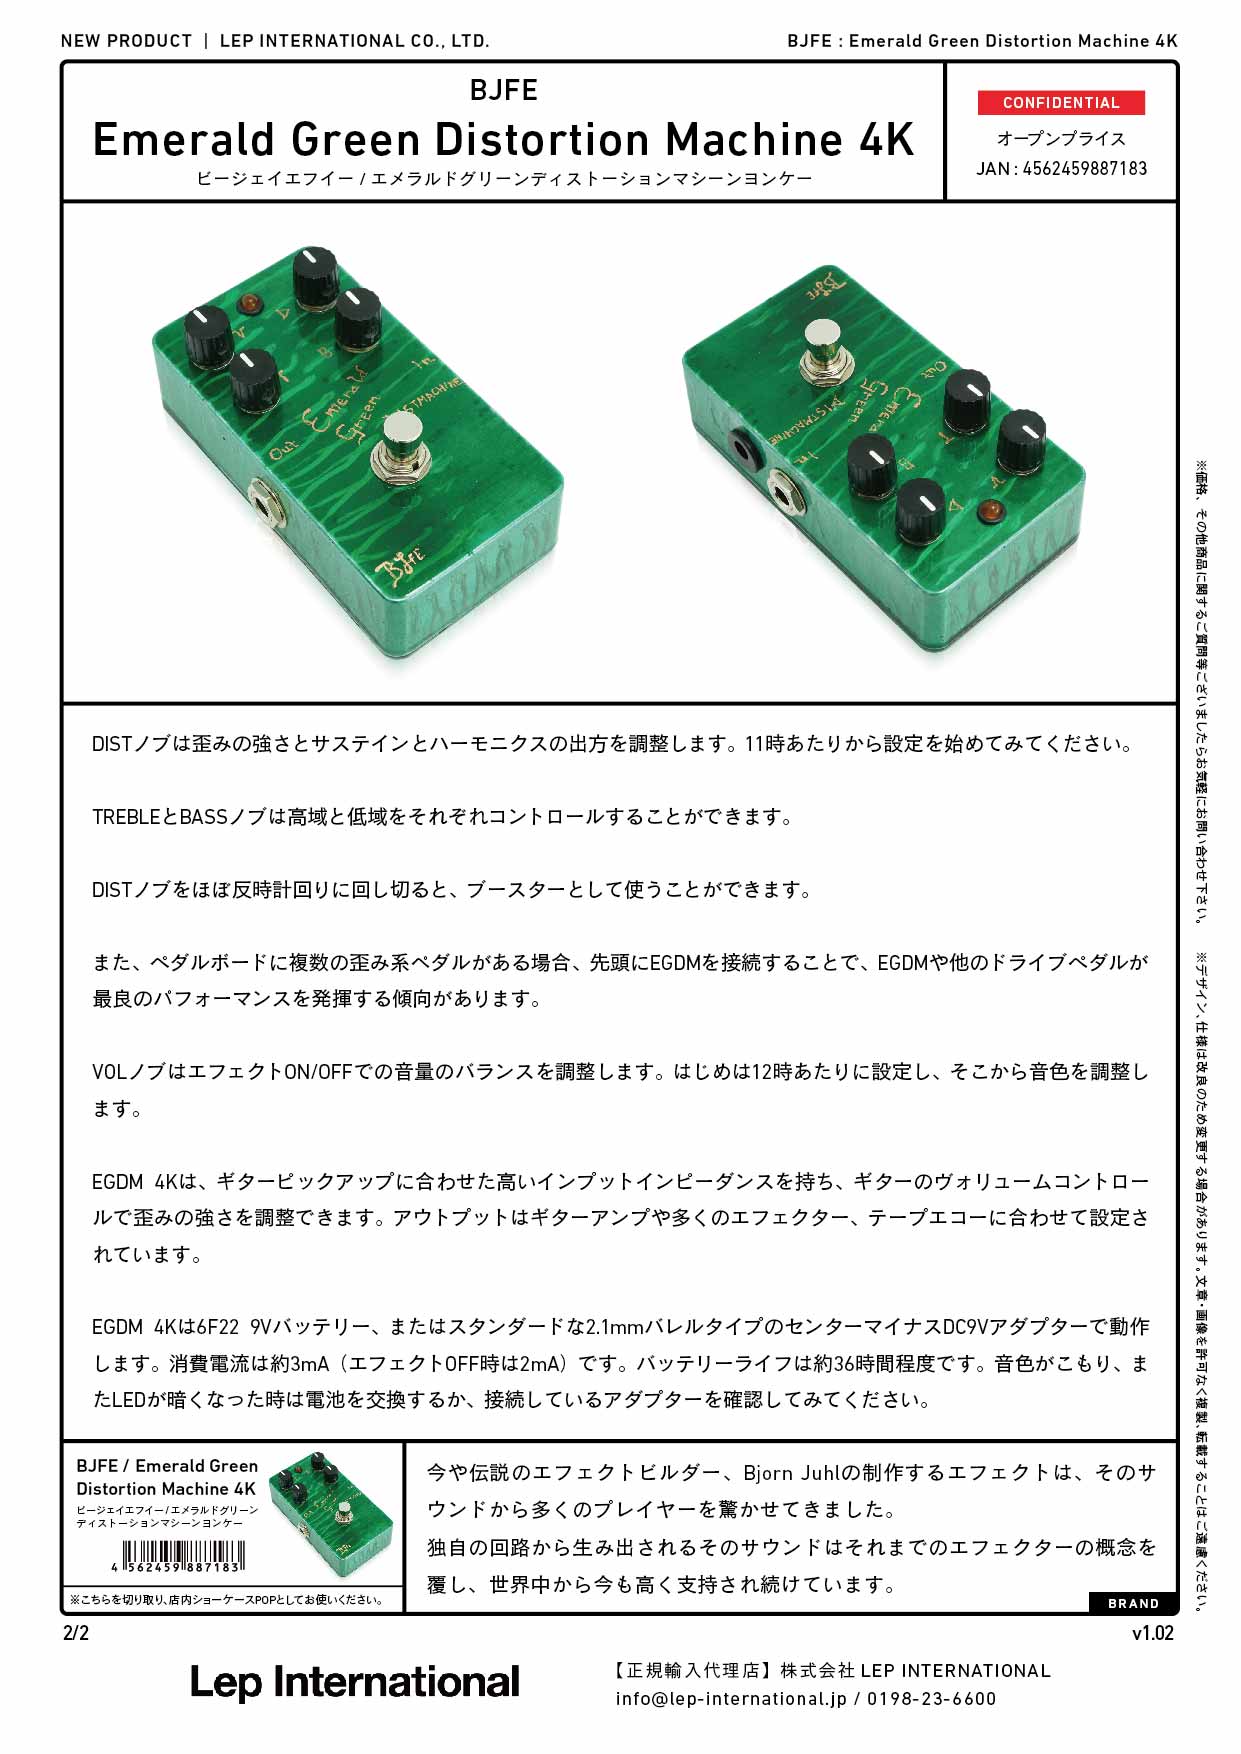 BJFE/Emerald Green Distortion Machine 4K